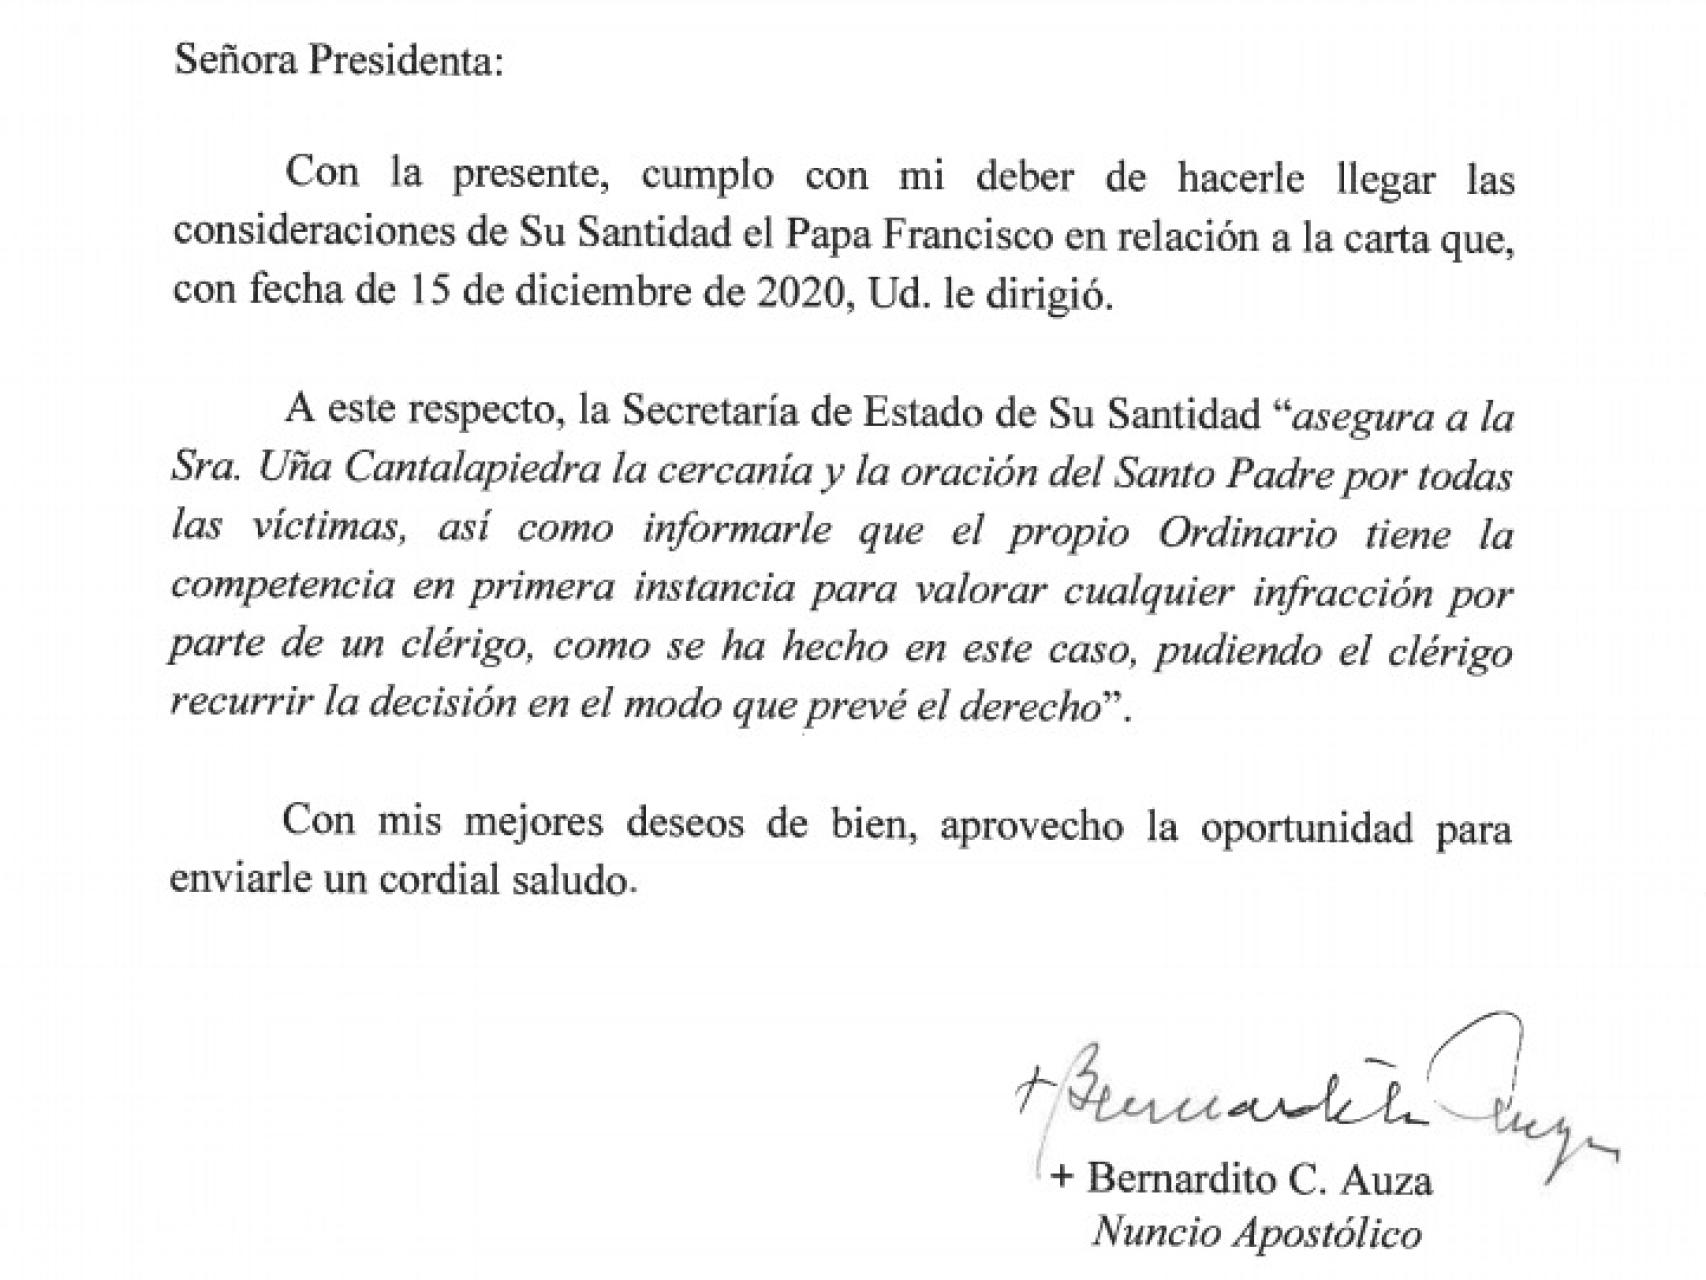 La carta de respuesta emitida desde la Santa Sede.